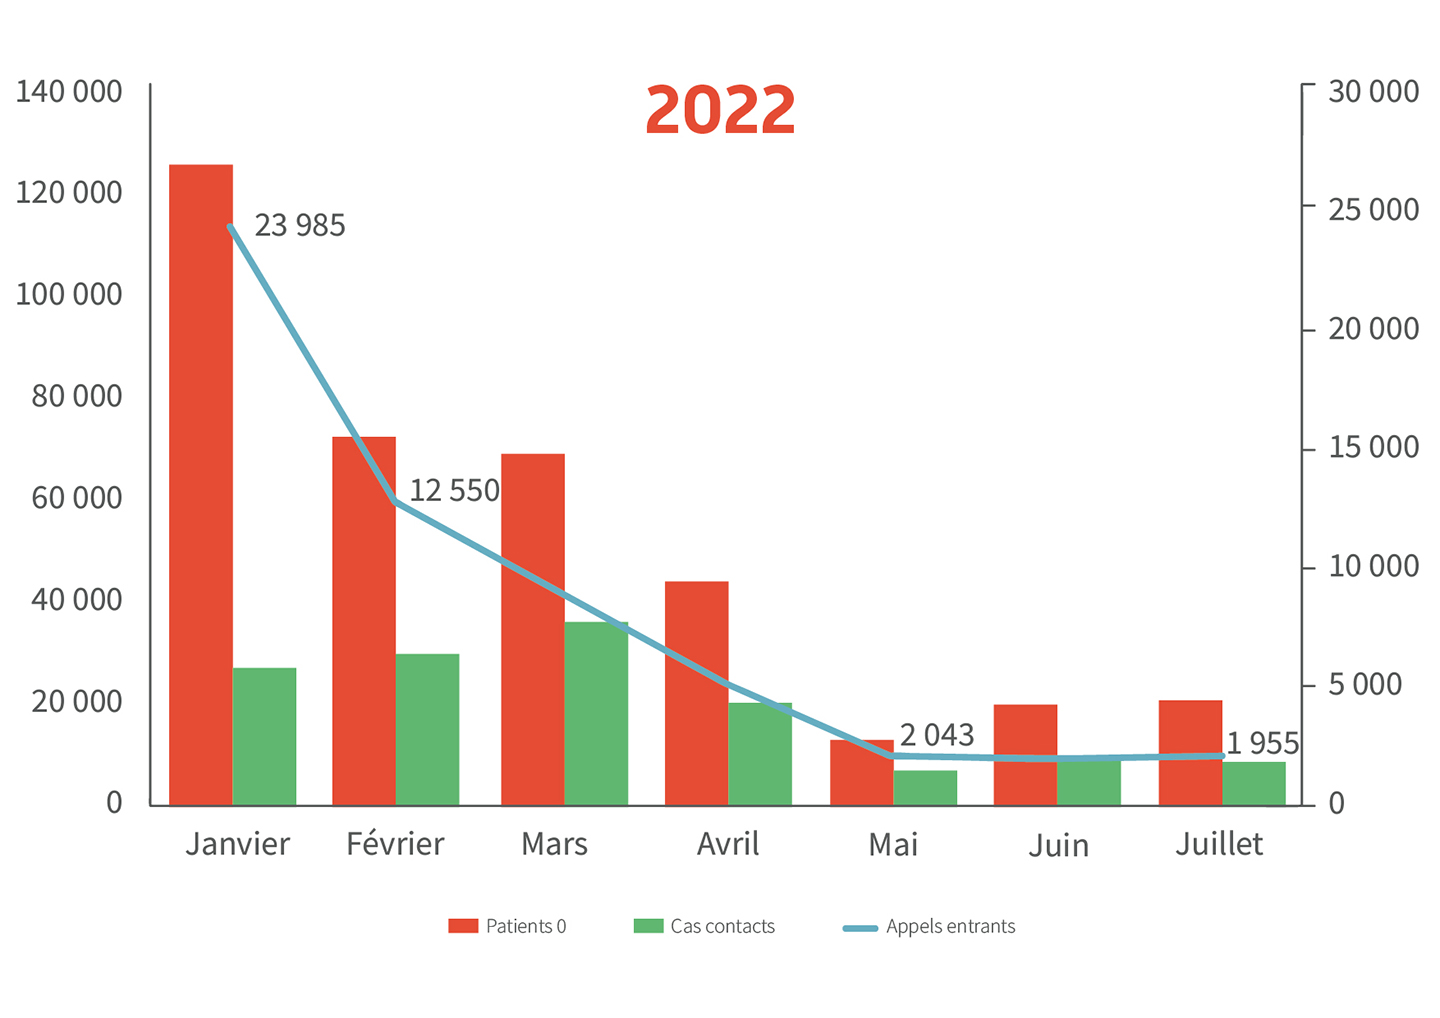 Grahique représentant le nombre de patients 0, de cas contacts et d'appels entrants au cours de l'année 2022